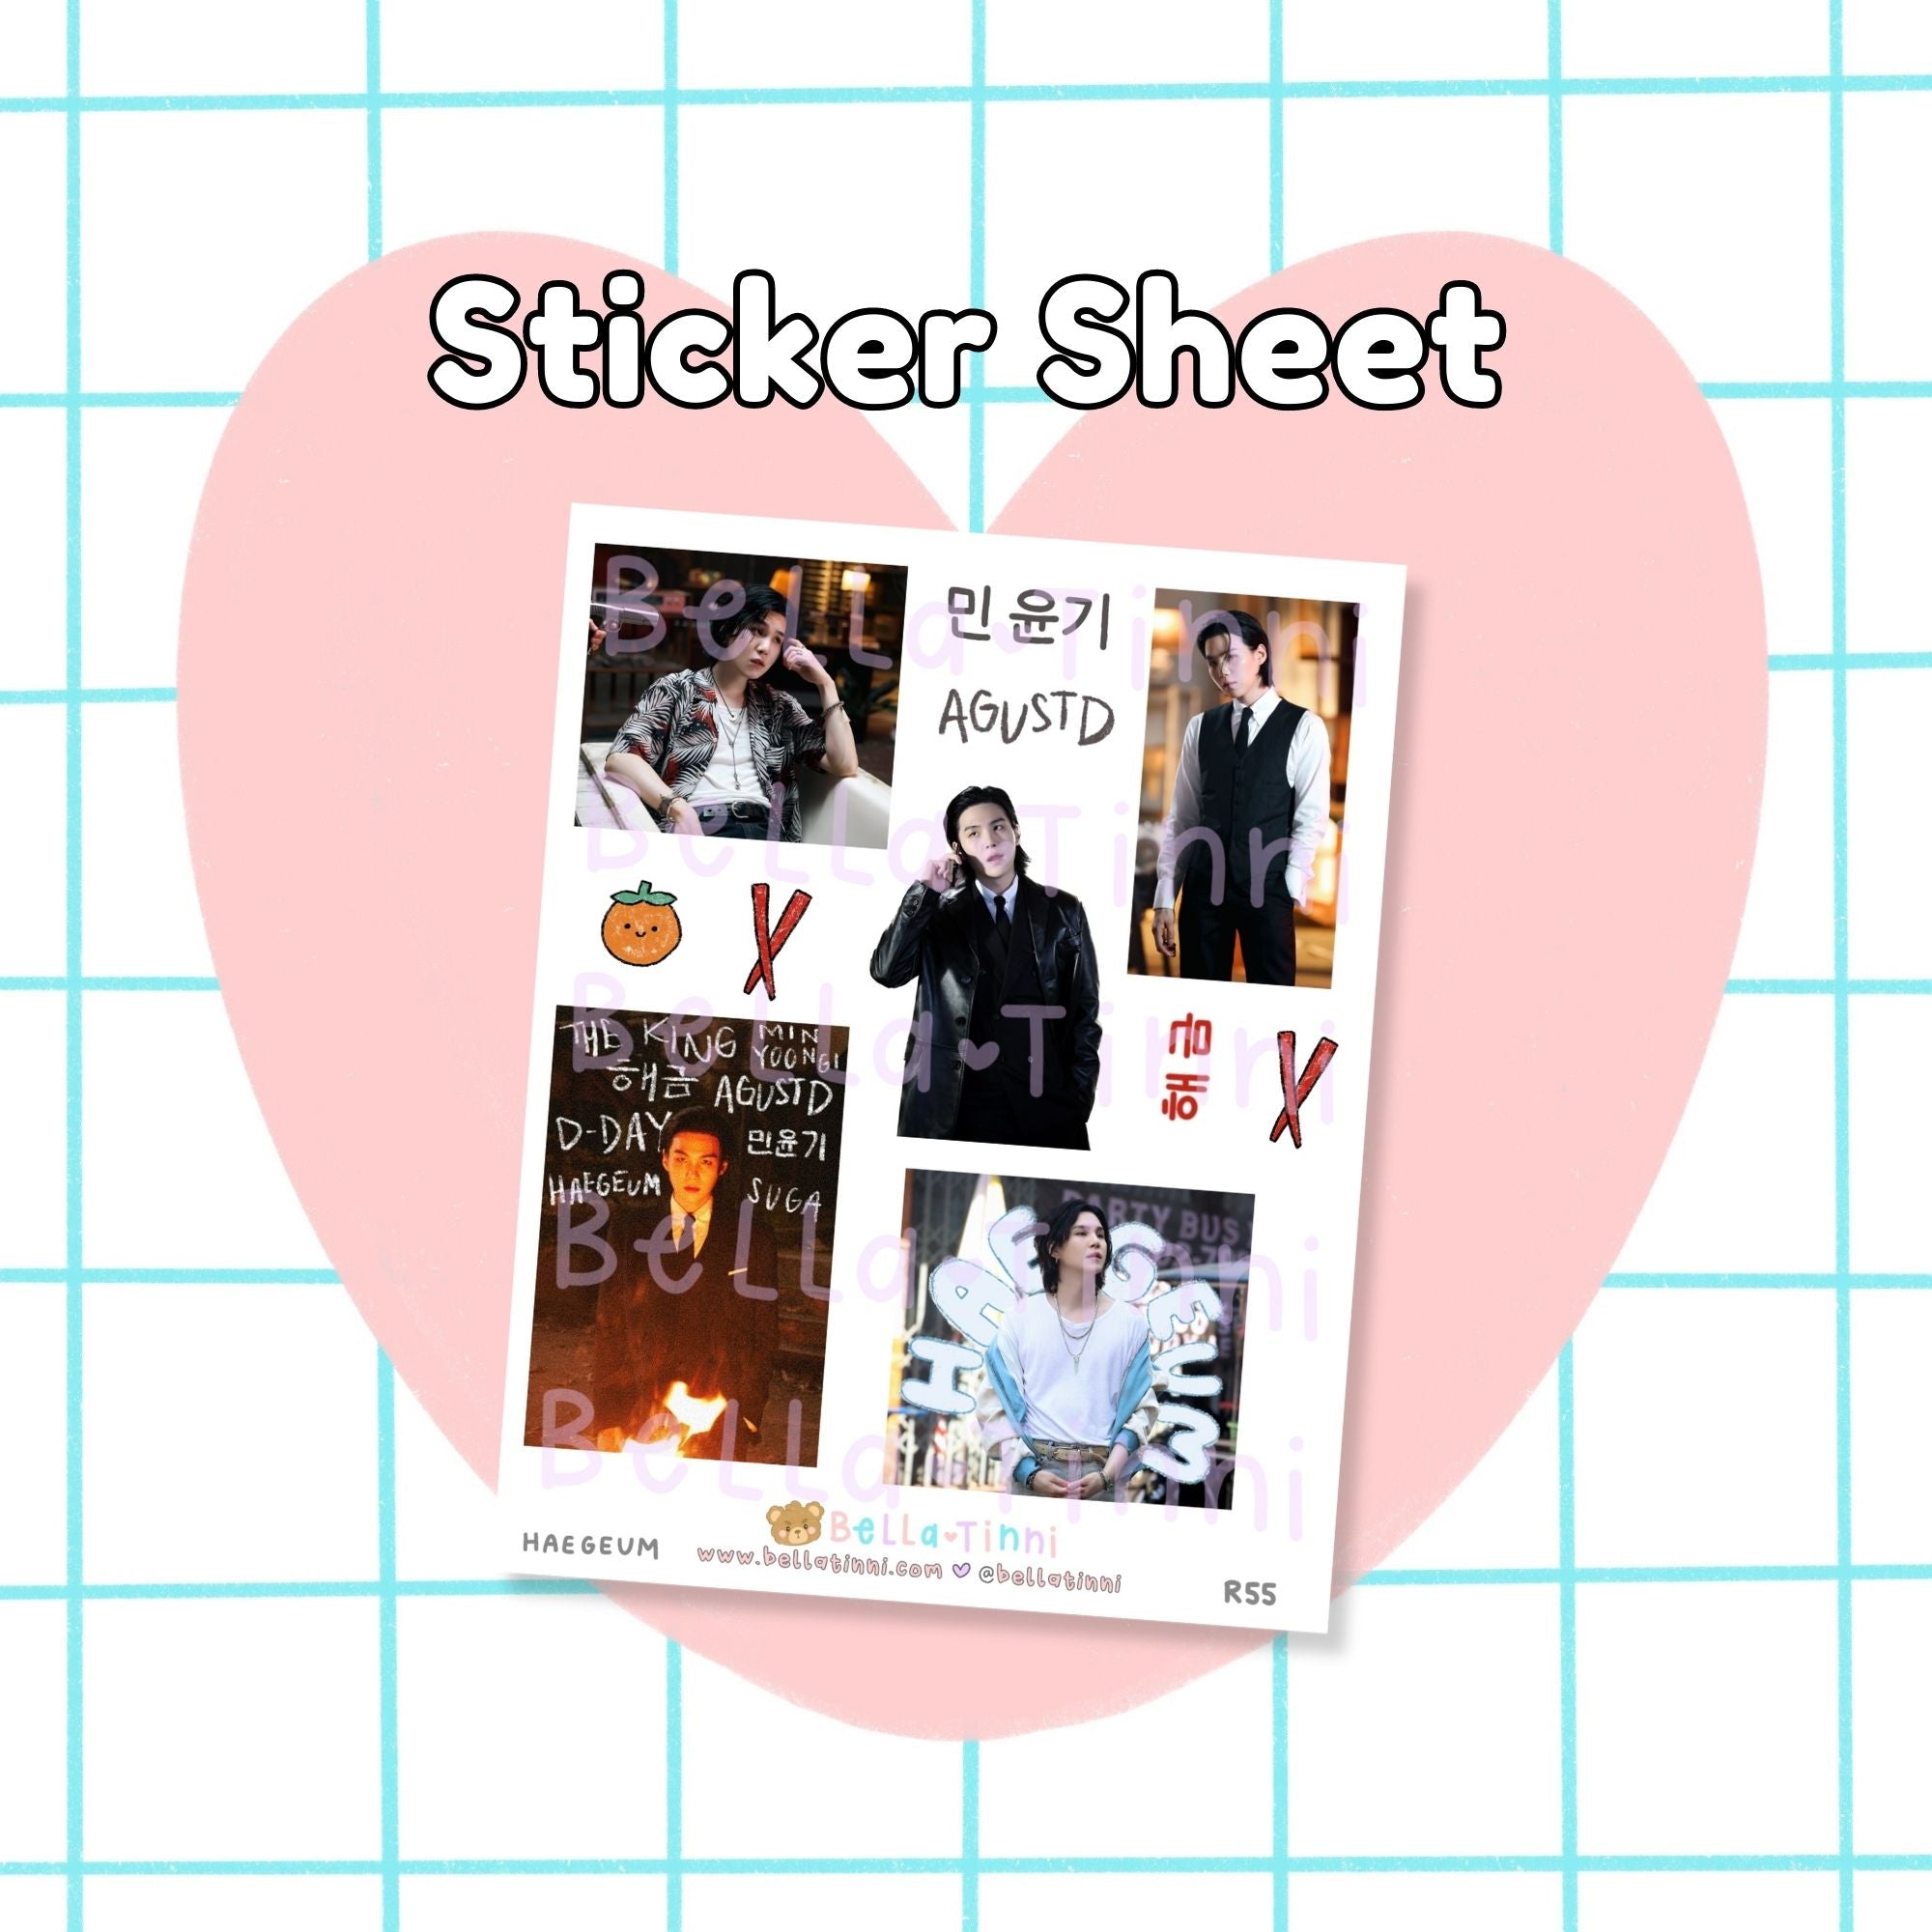 Haegeum Sticker Sheet - R55